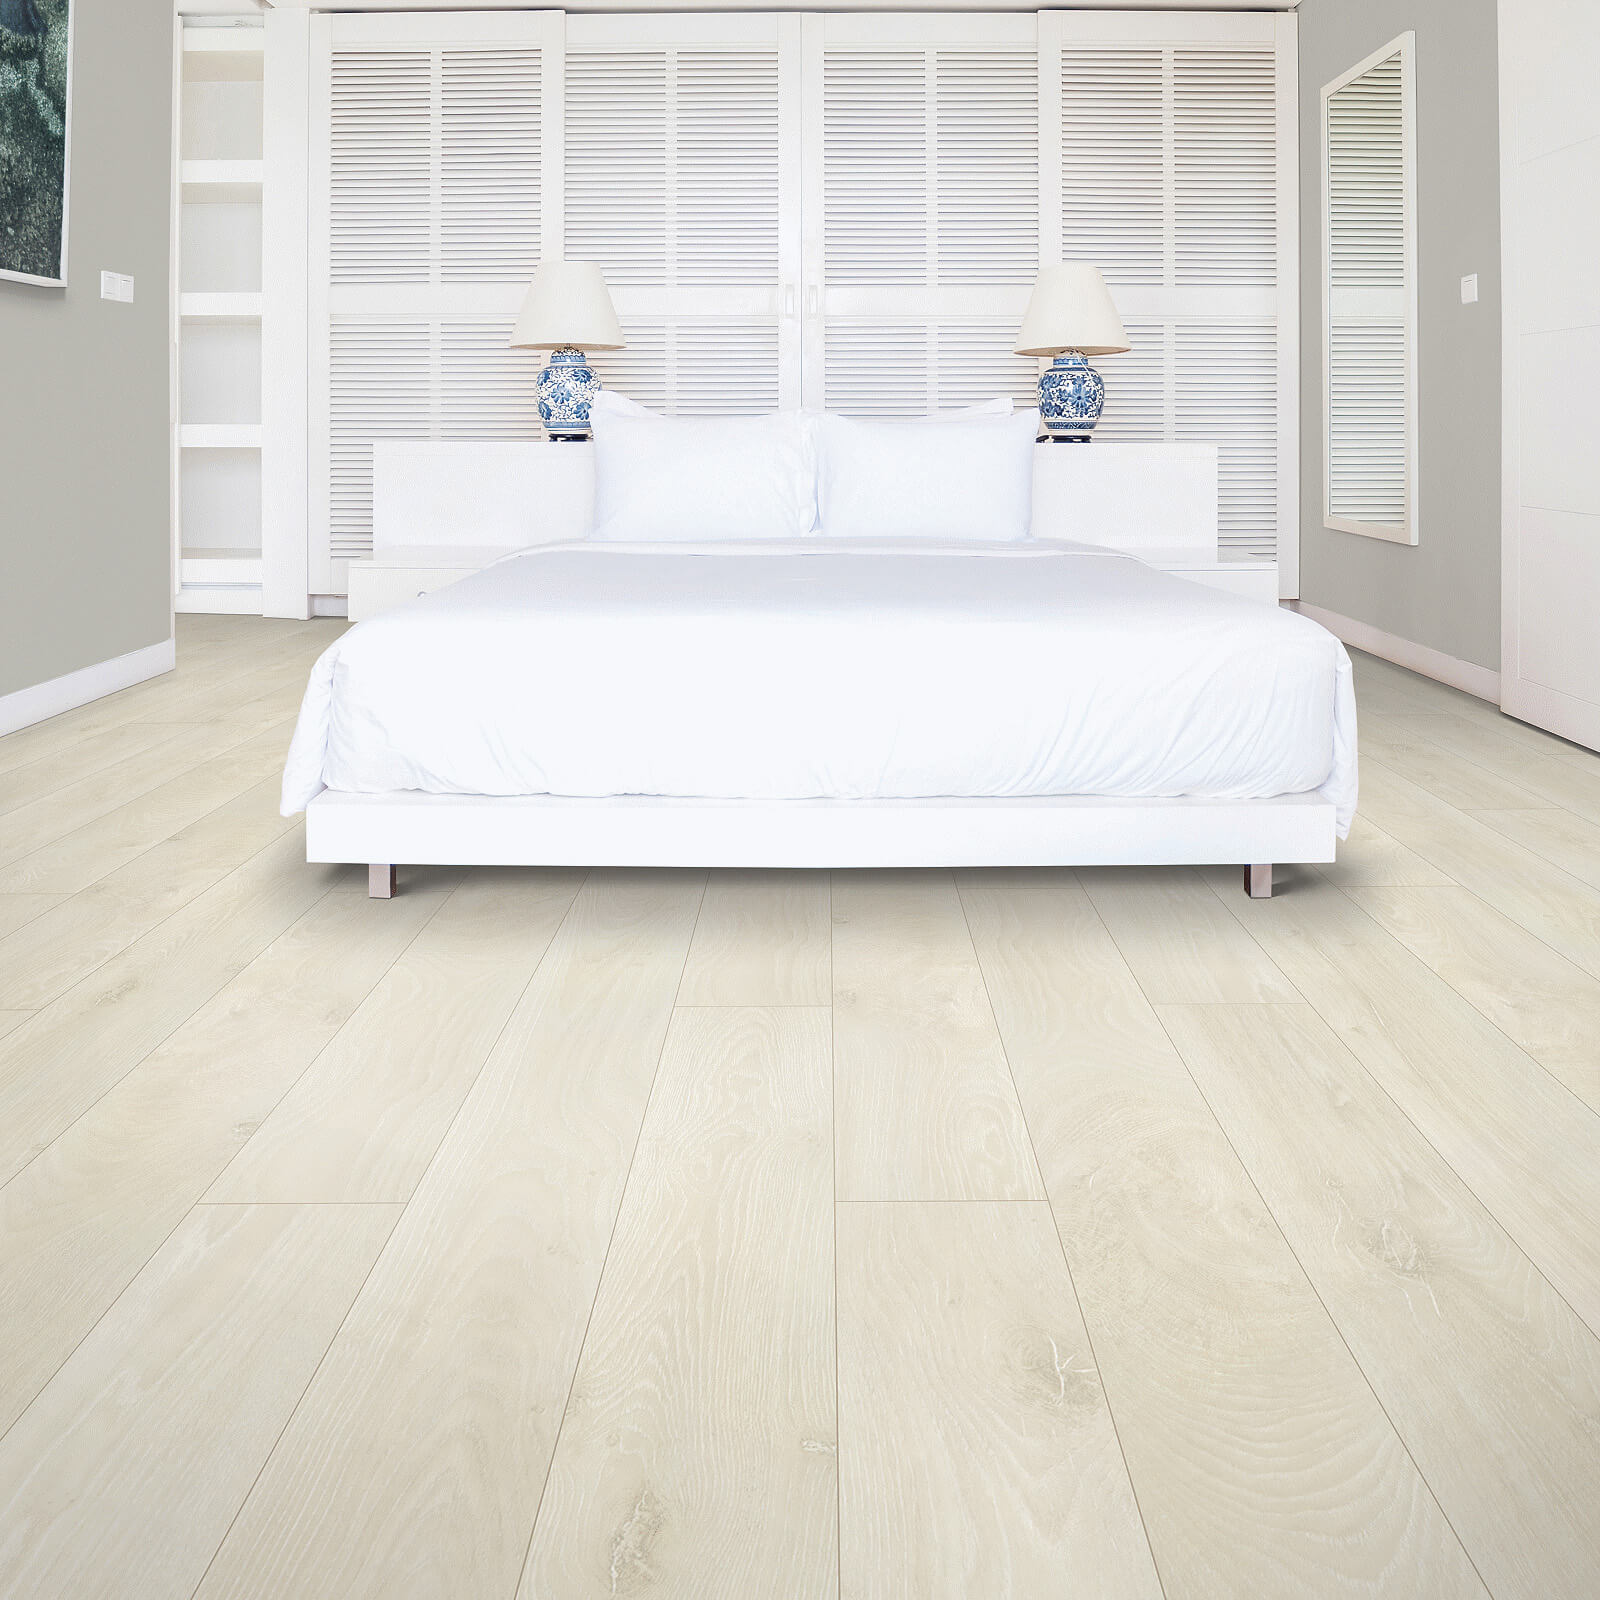 Laminate bedroom flooring | The Flooring Center